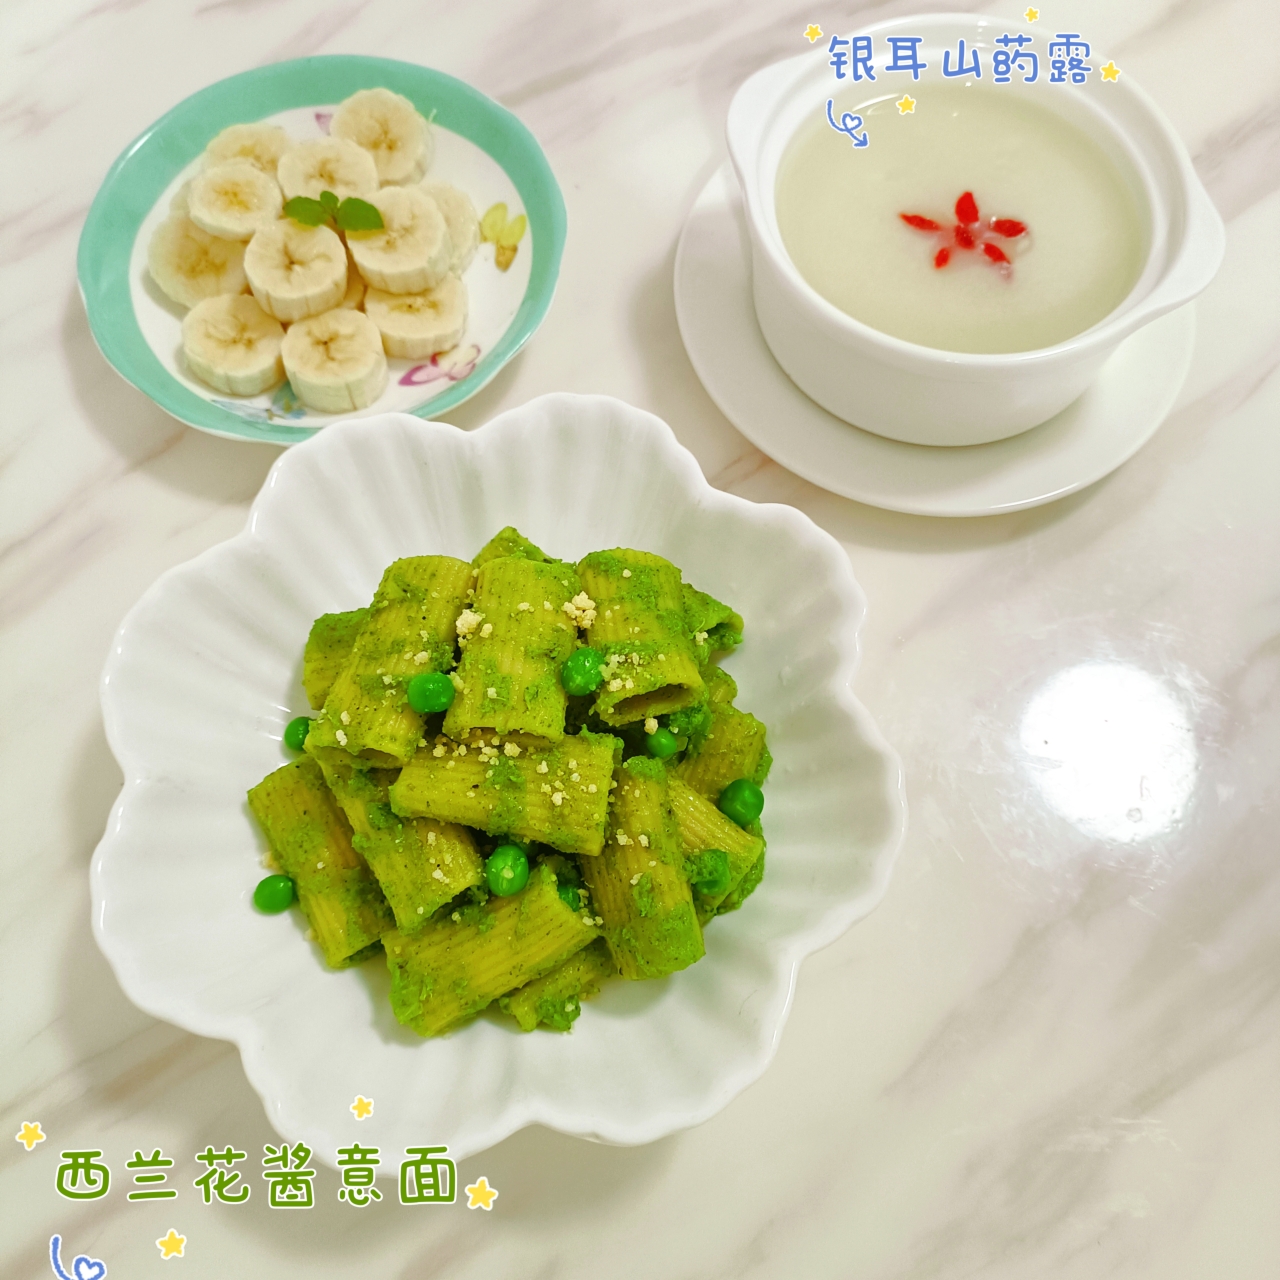 西兰花意面（Pasta with broccoli)